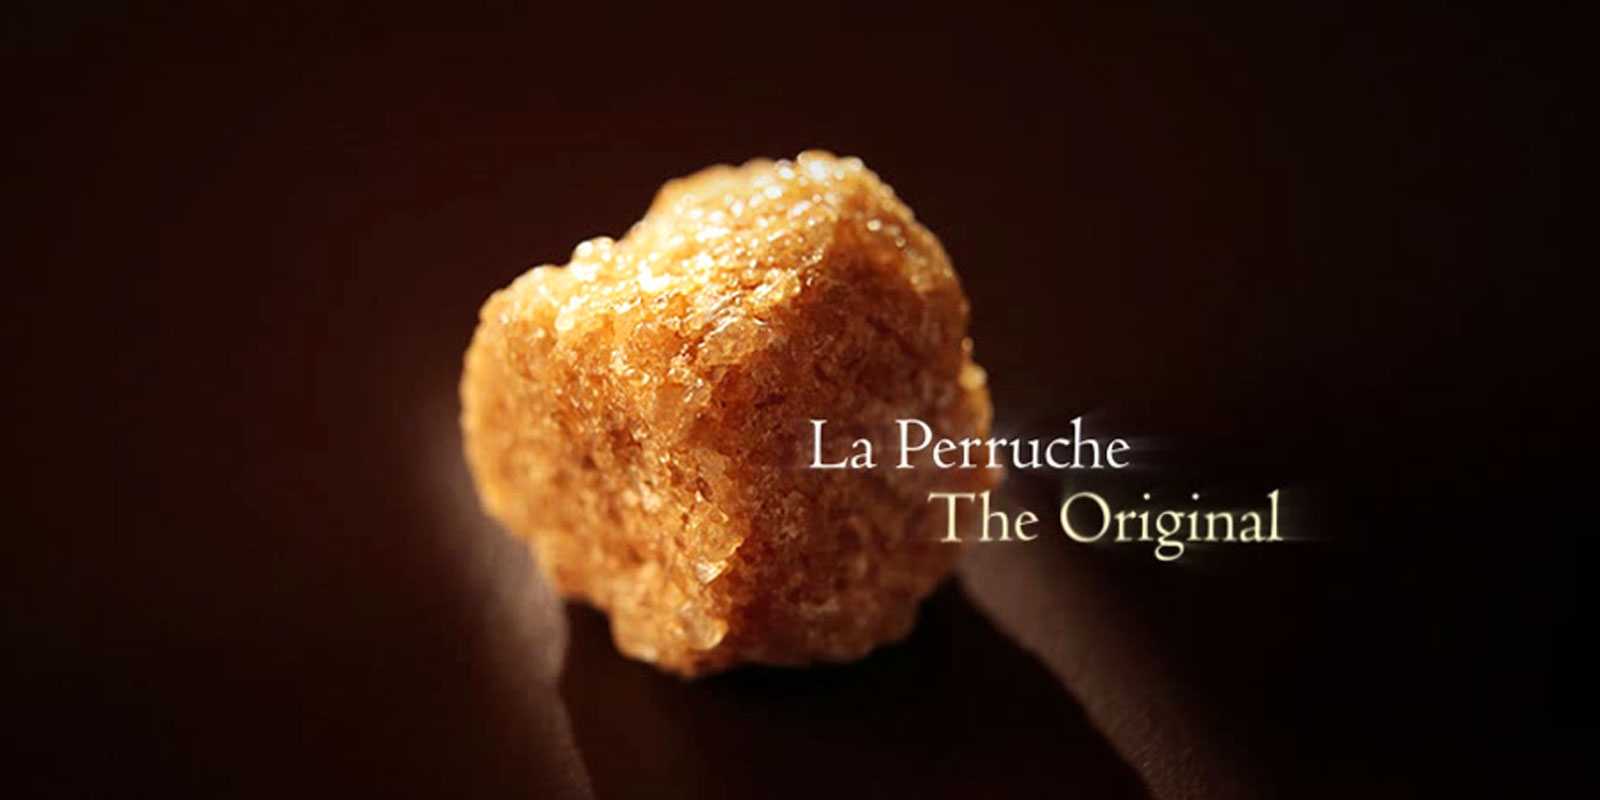 La Perruche - gula tebu La Perruche ialah produk yang luar biasa, dengan rasa istimewa yang akan menggembirakan mereka yang menghargai rasa yang halus dan canggih. Secara ringkas, ia menimbulkan keseronokan semata-mata ke dalam deria anda. La Perruche didatangkan dalam ketulan gula yang tidak teratur berwarna putih atau perang keemasan. Bentuk kristal dalam shaker juga dikenali sebagai cassonade.